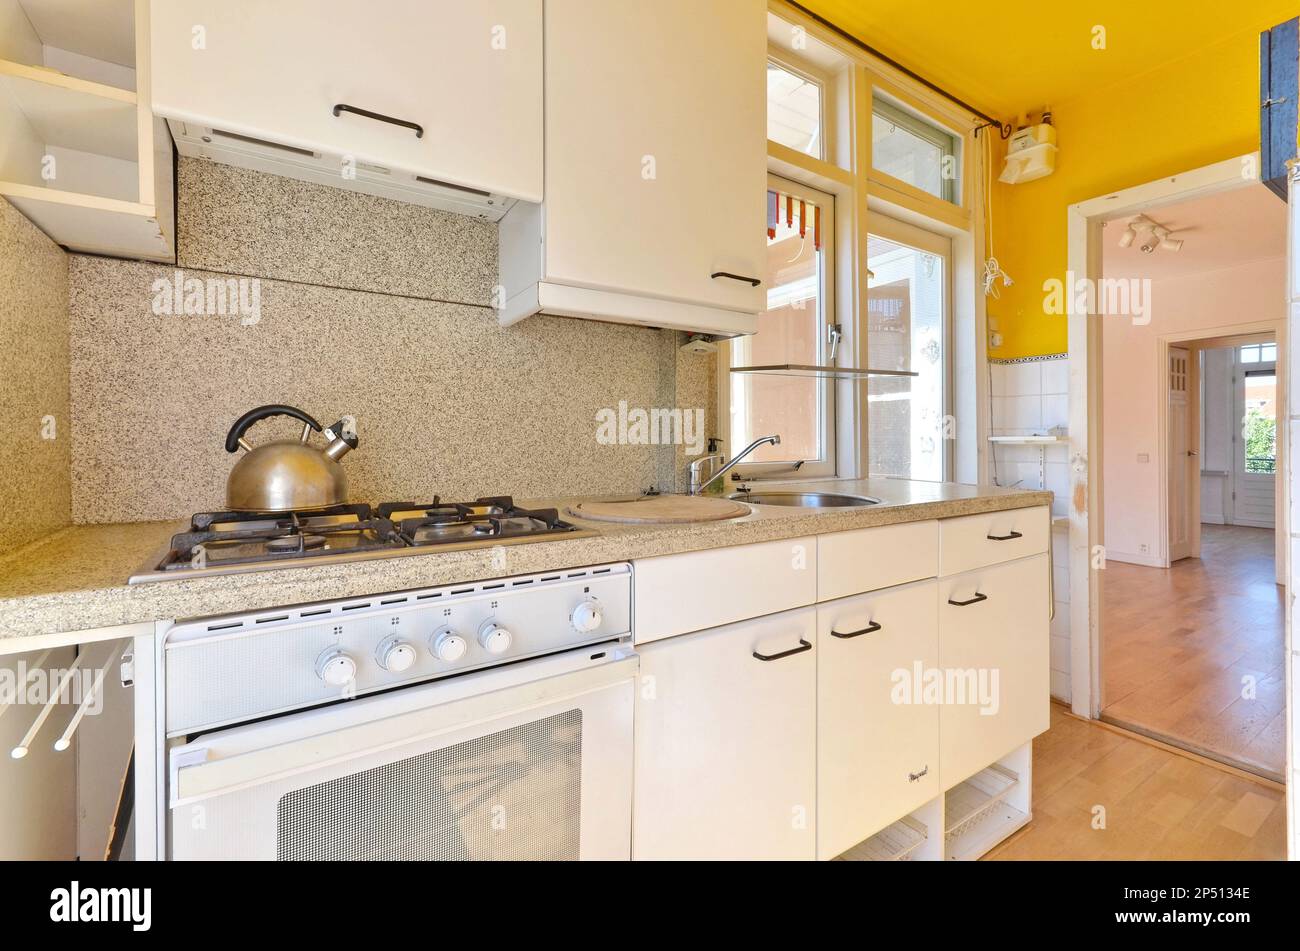 Eine Küche mit gelben Wänden und weißen Geräten auf dem Herd, in einem offenen Raum, der seit vielen Jahren genutzt wird Stockfoto